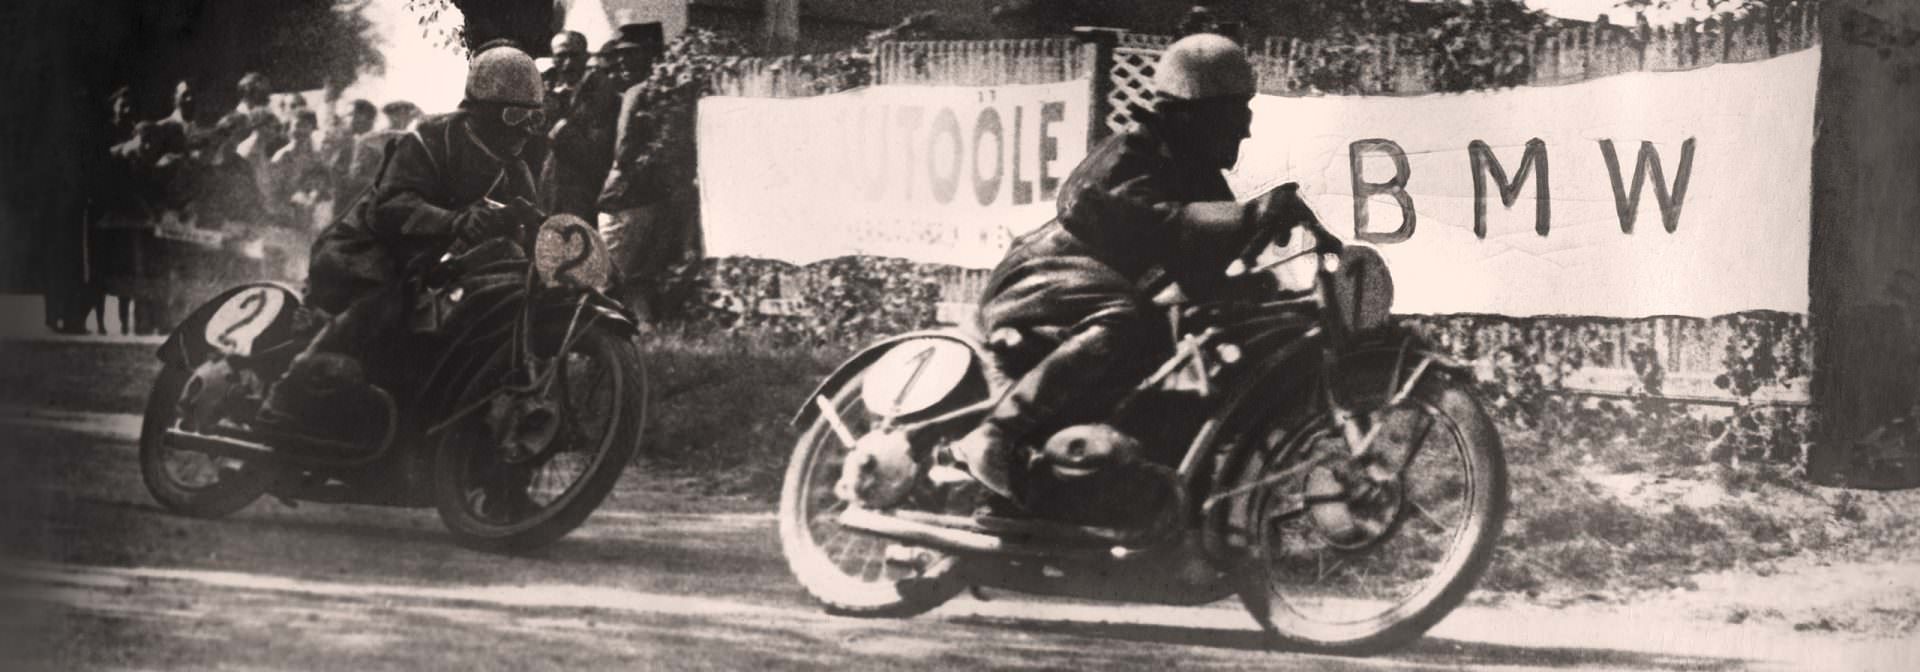 Czarno-biała fotografia archiwalna wczesnych wyścigów motocyklowych BMW. Dwóch motocyklistów ściga się po torze, a w tle widoczny jest baner BMW.